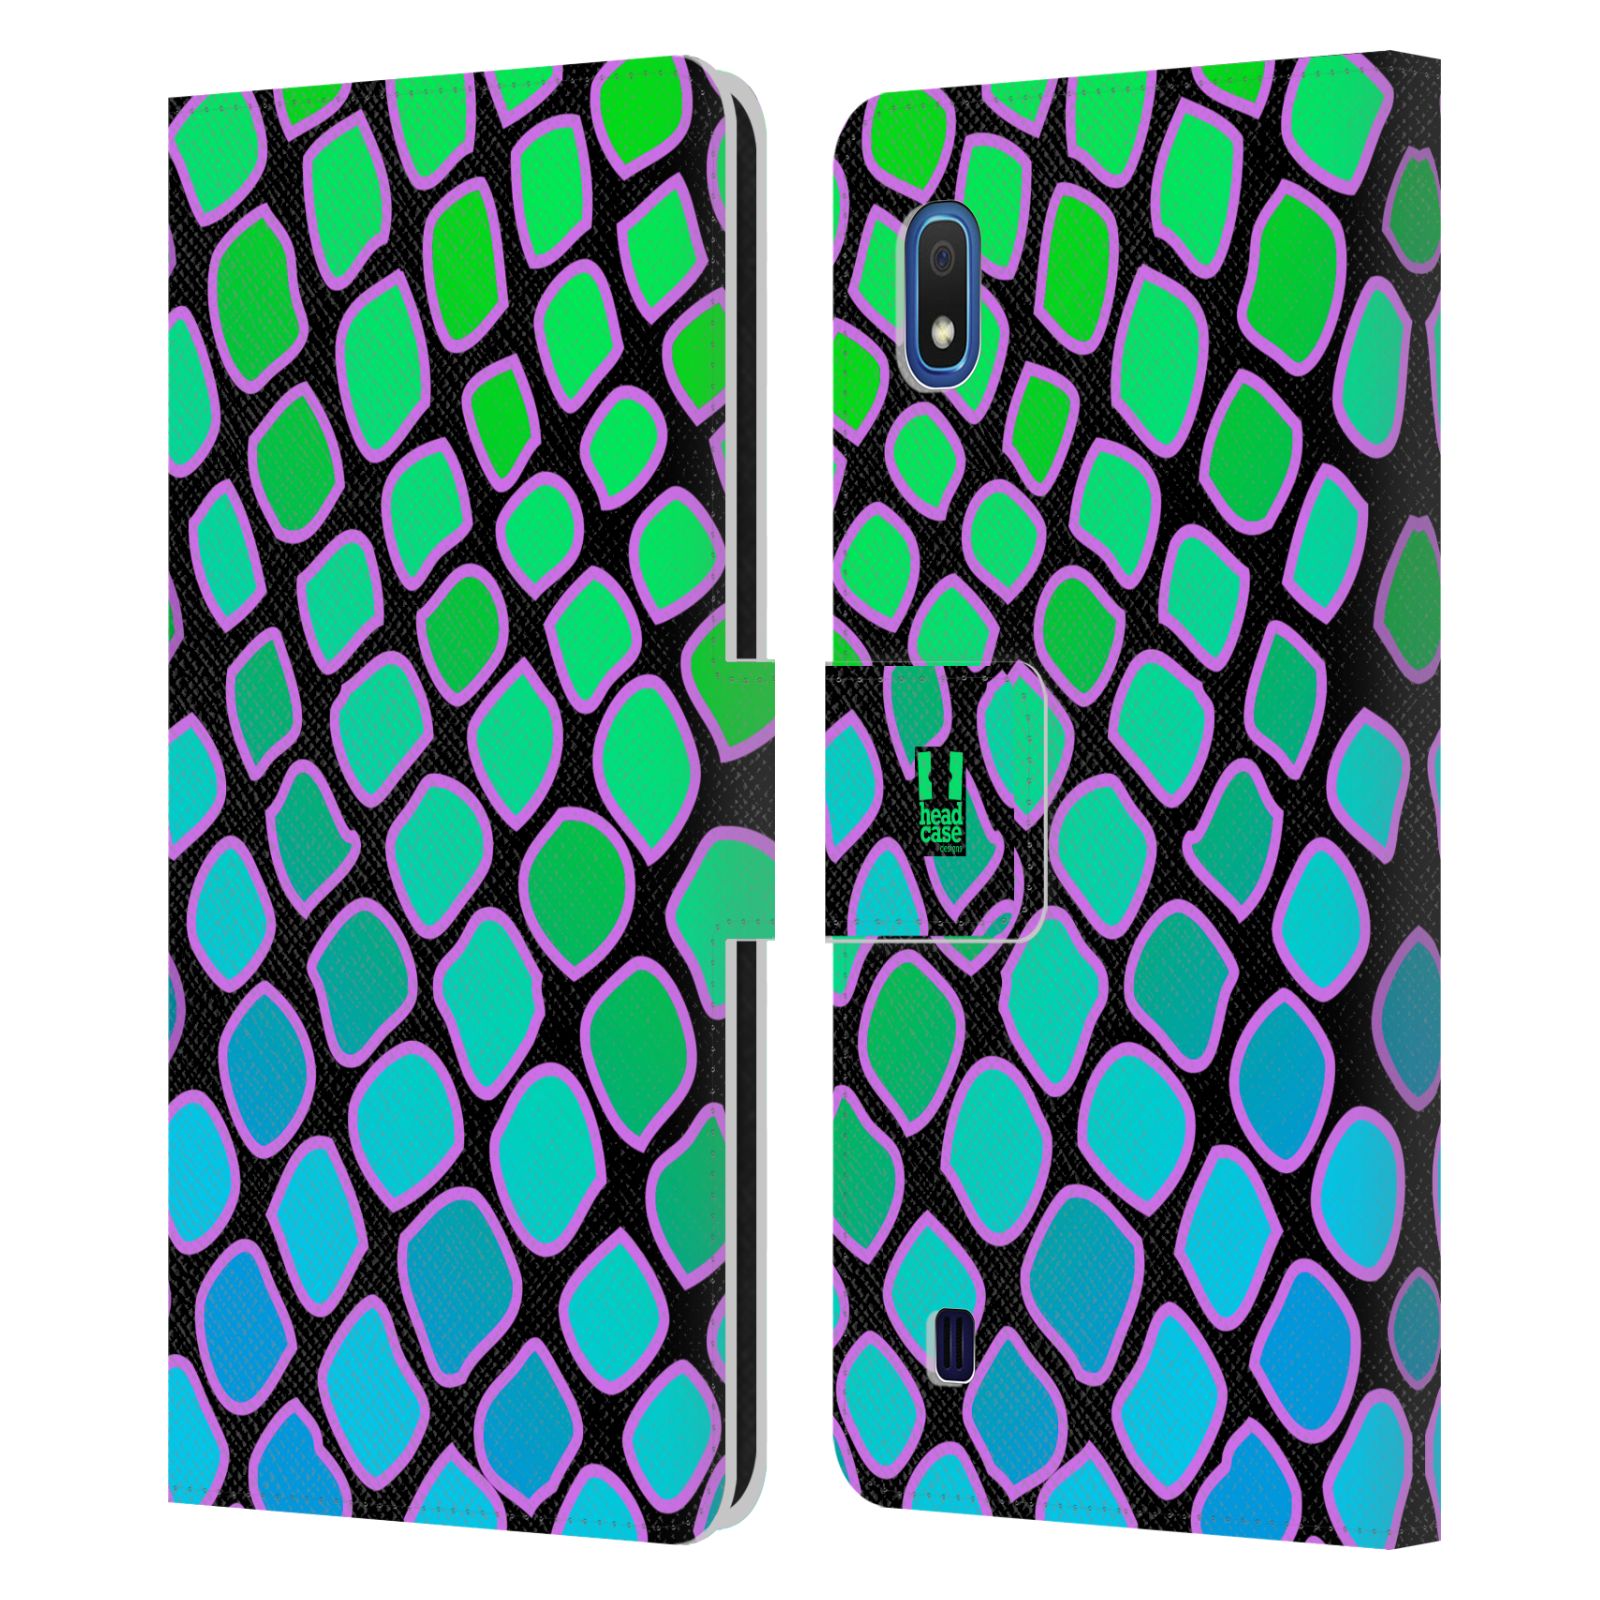 Pouzdro na mobil Samsung Galaxy A10 Zvířecí barevné vzory vodní had modrá a zelená barva AQUA